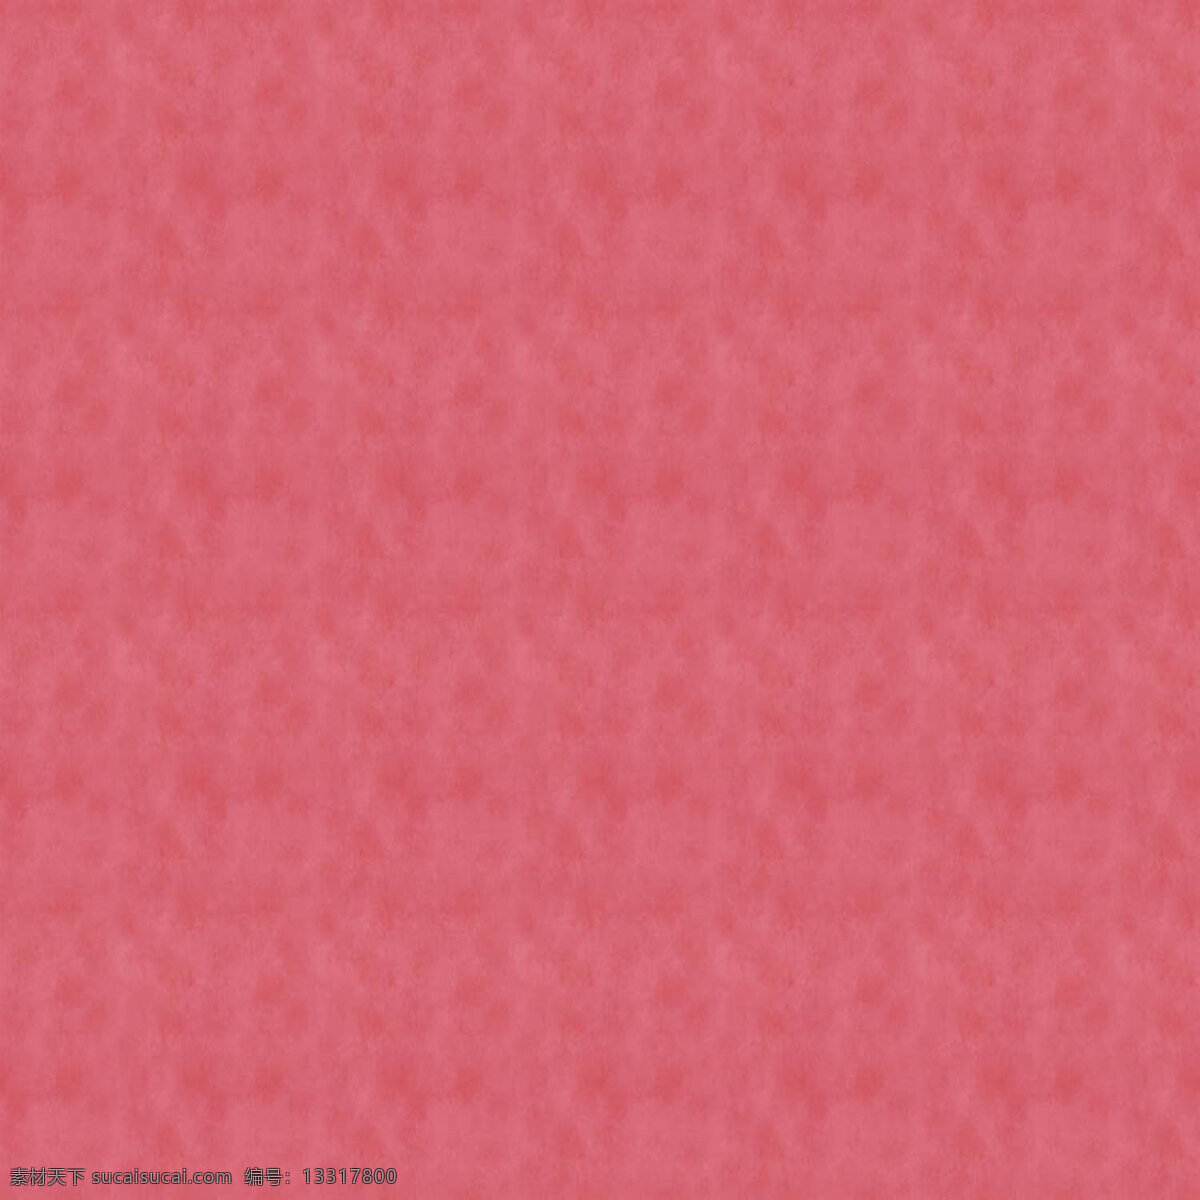 粉色 花纹 纹理素材 纹路背景 背景图片